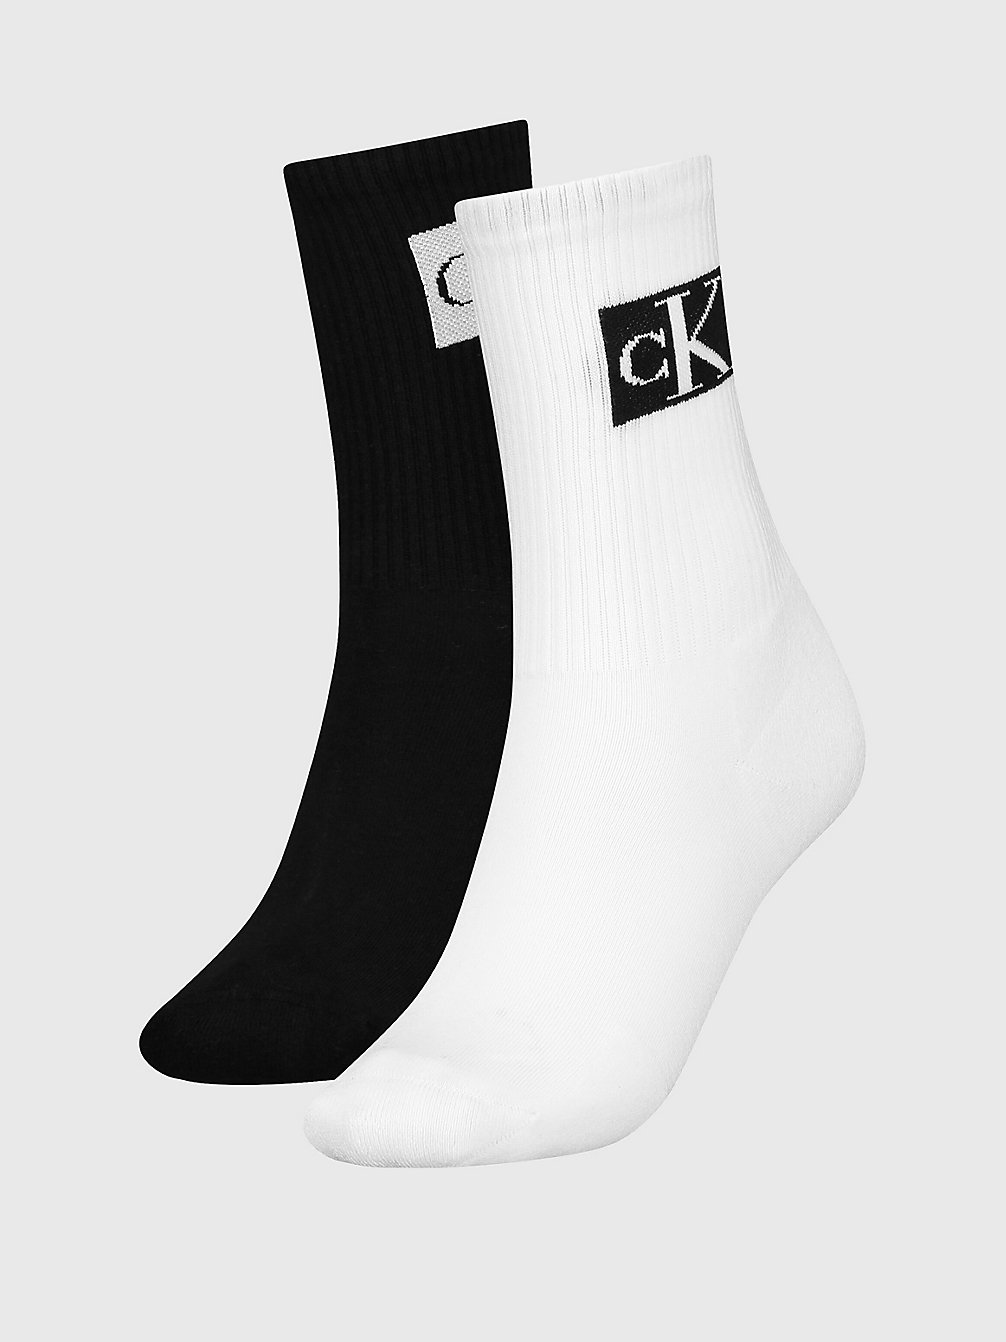 WHITE / BLACK 2 Pack Crew Socks undefined women Calvin Klein